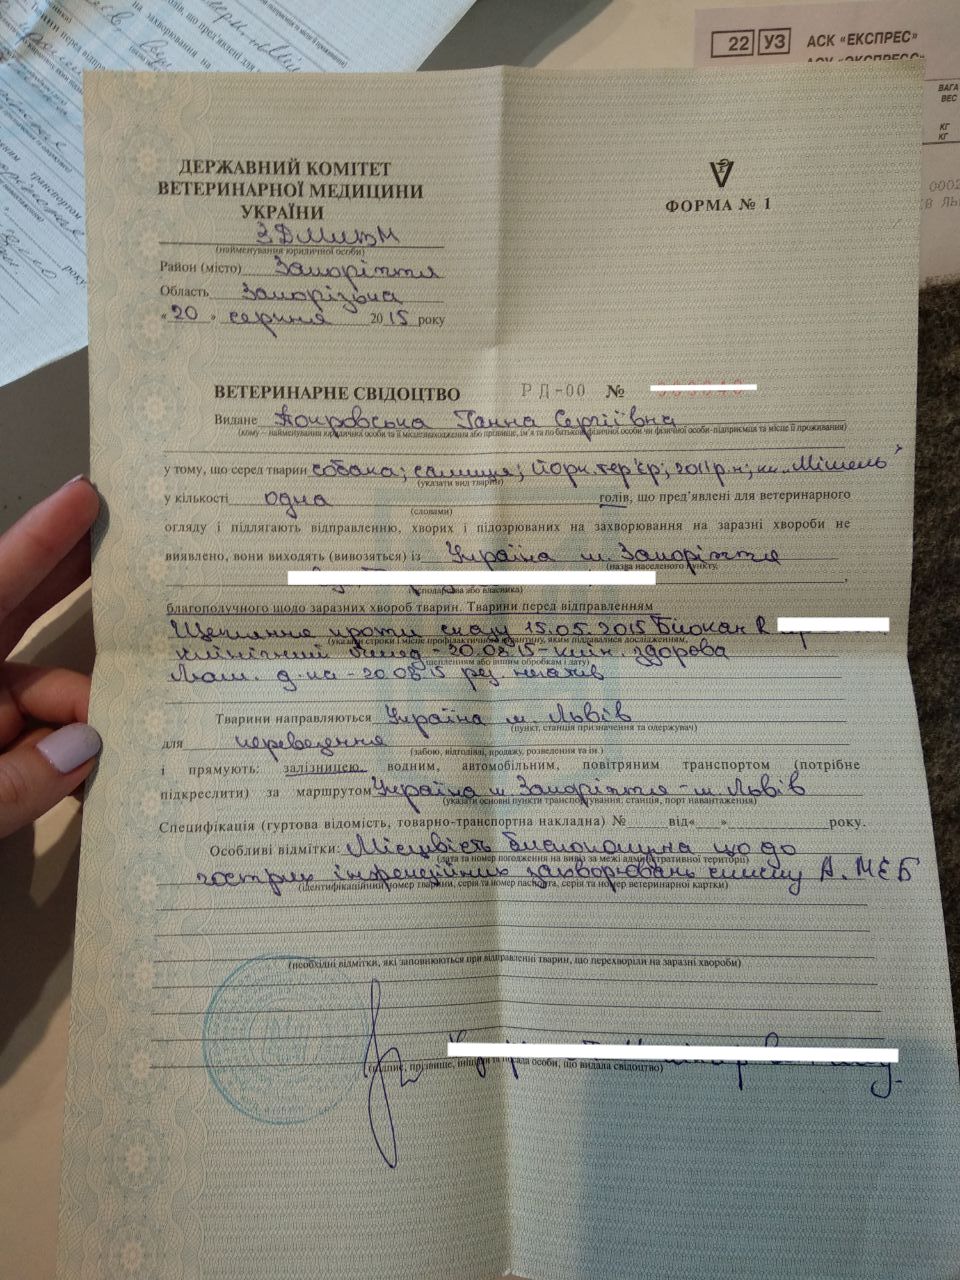 Форма №1 для путешествий по Украине ветпаспорт / фото: Анна Покровская